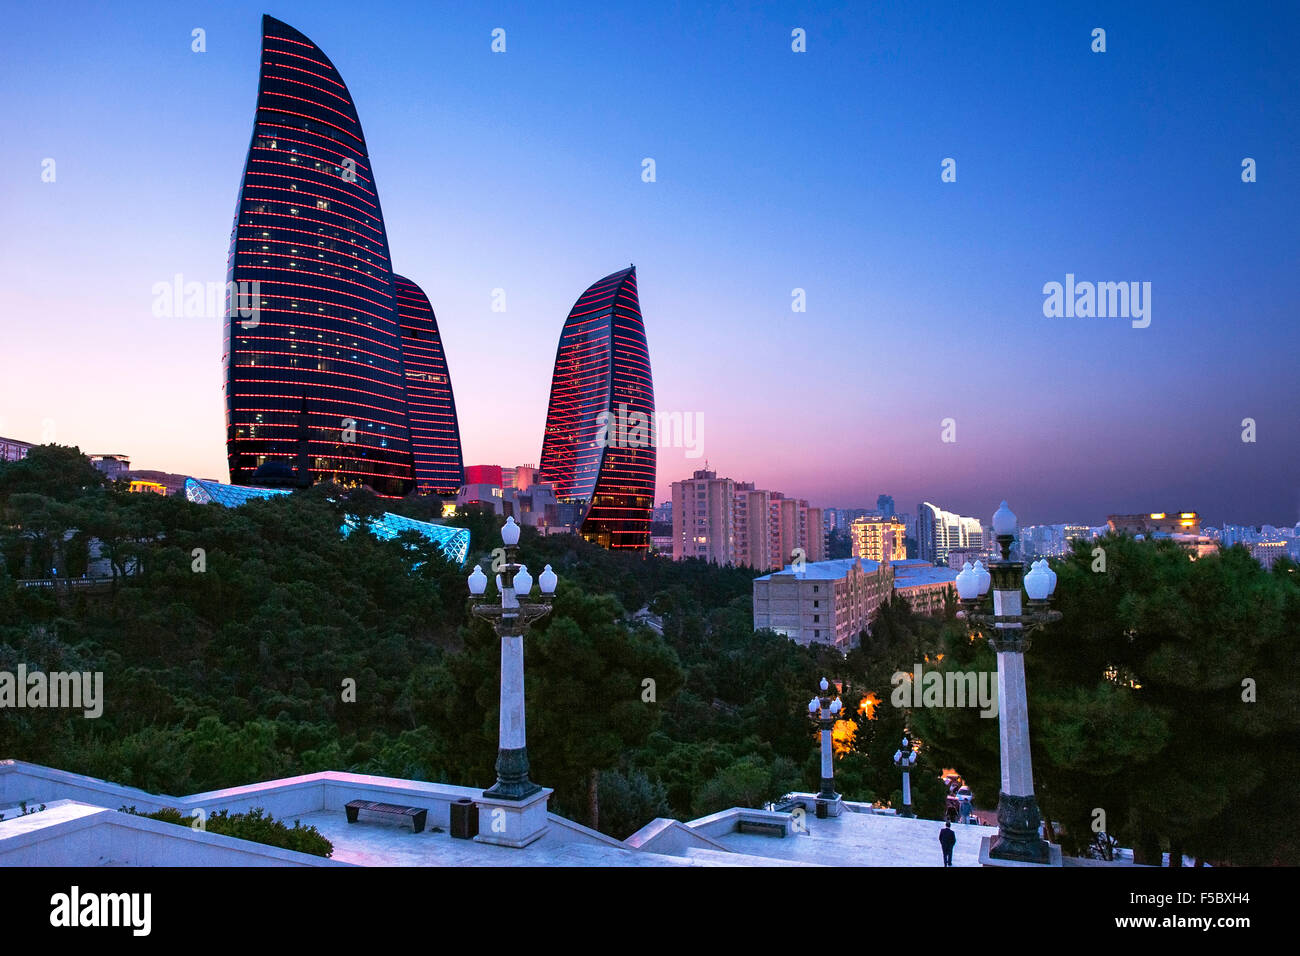 Baku's Flame Towers viewed from Dağüstü park at dusk. Stock Photo